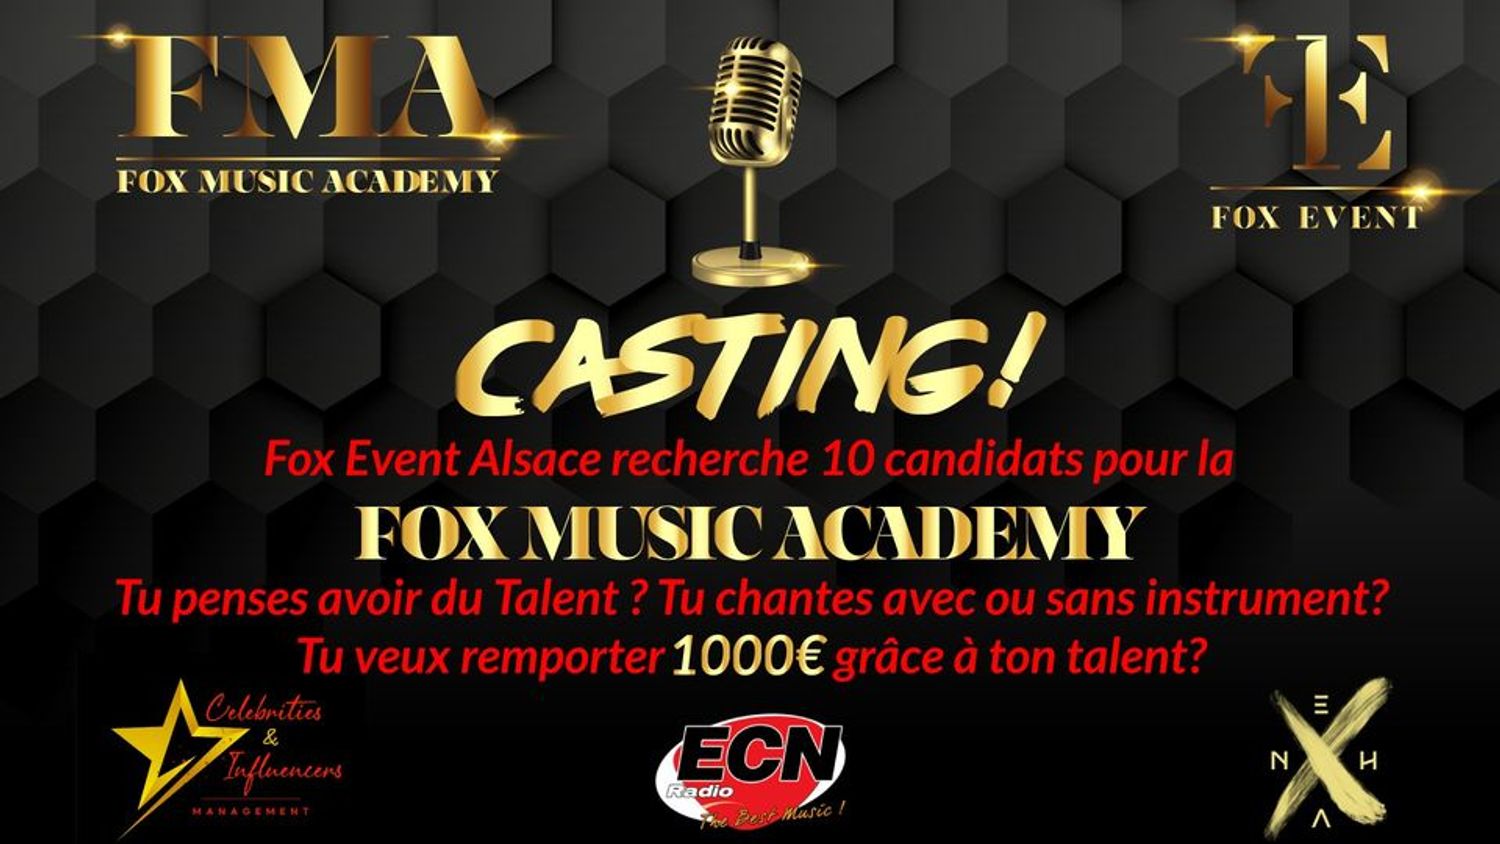 Casting Fox Event Academy